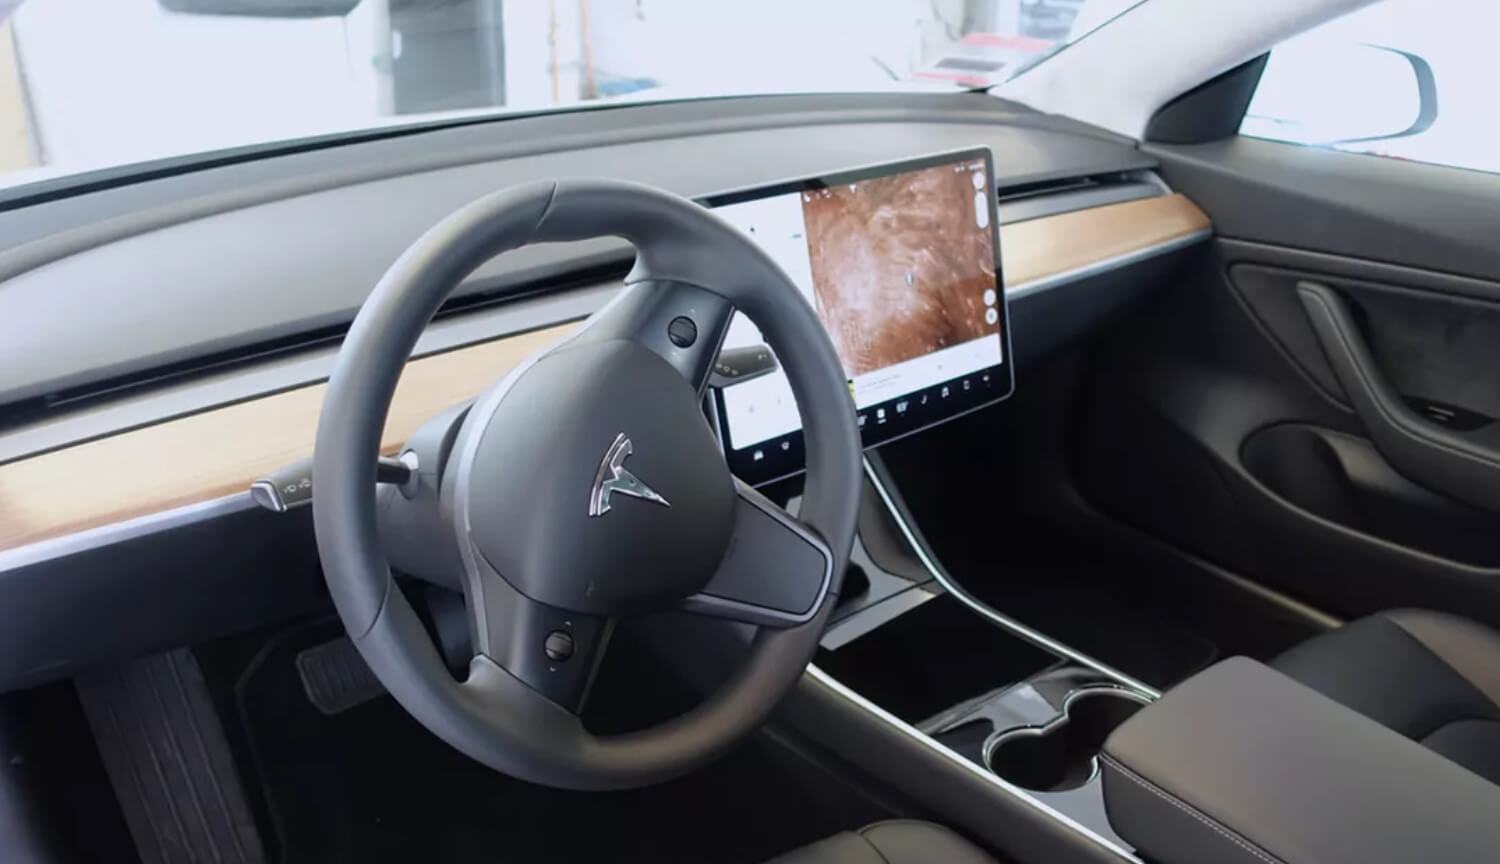 Приборная панель. Приборная панель Tesla Model 3 — образец минимализма и стиля. Фото.